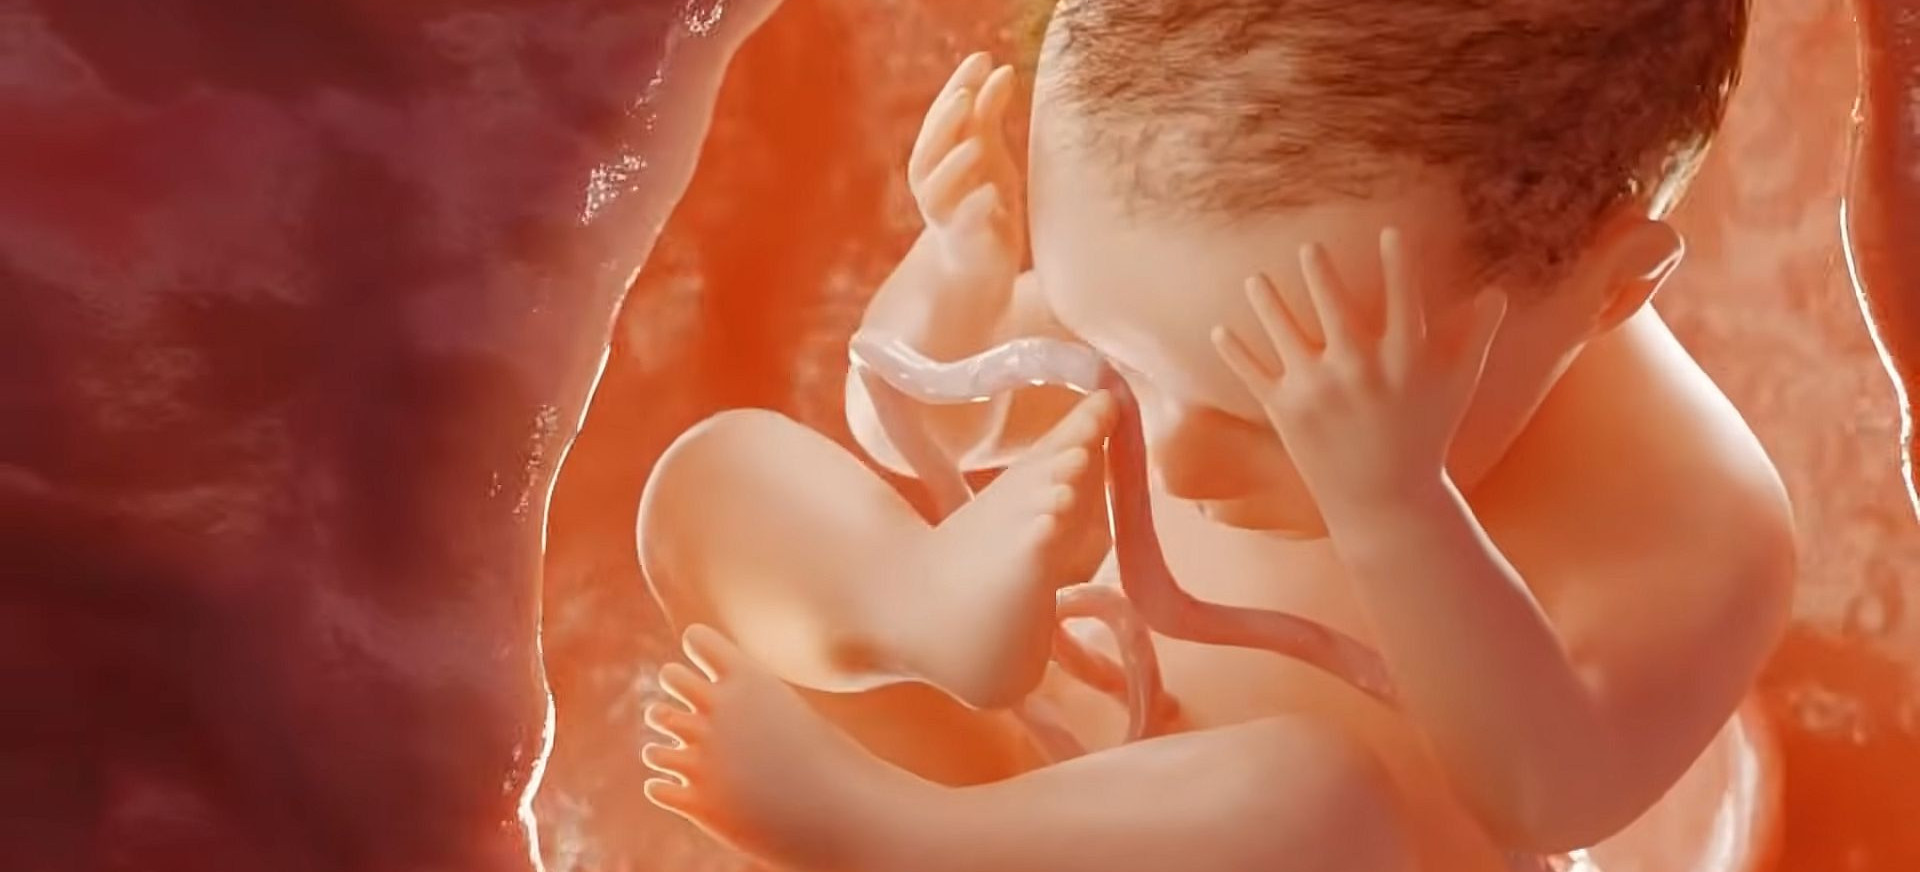 Aborcja nie jest synonimem nowoczesności! Film „Tętno” (VIDEO)